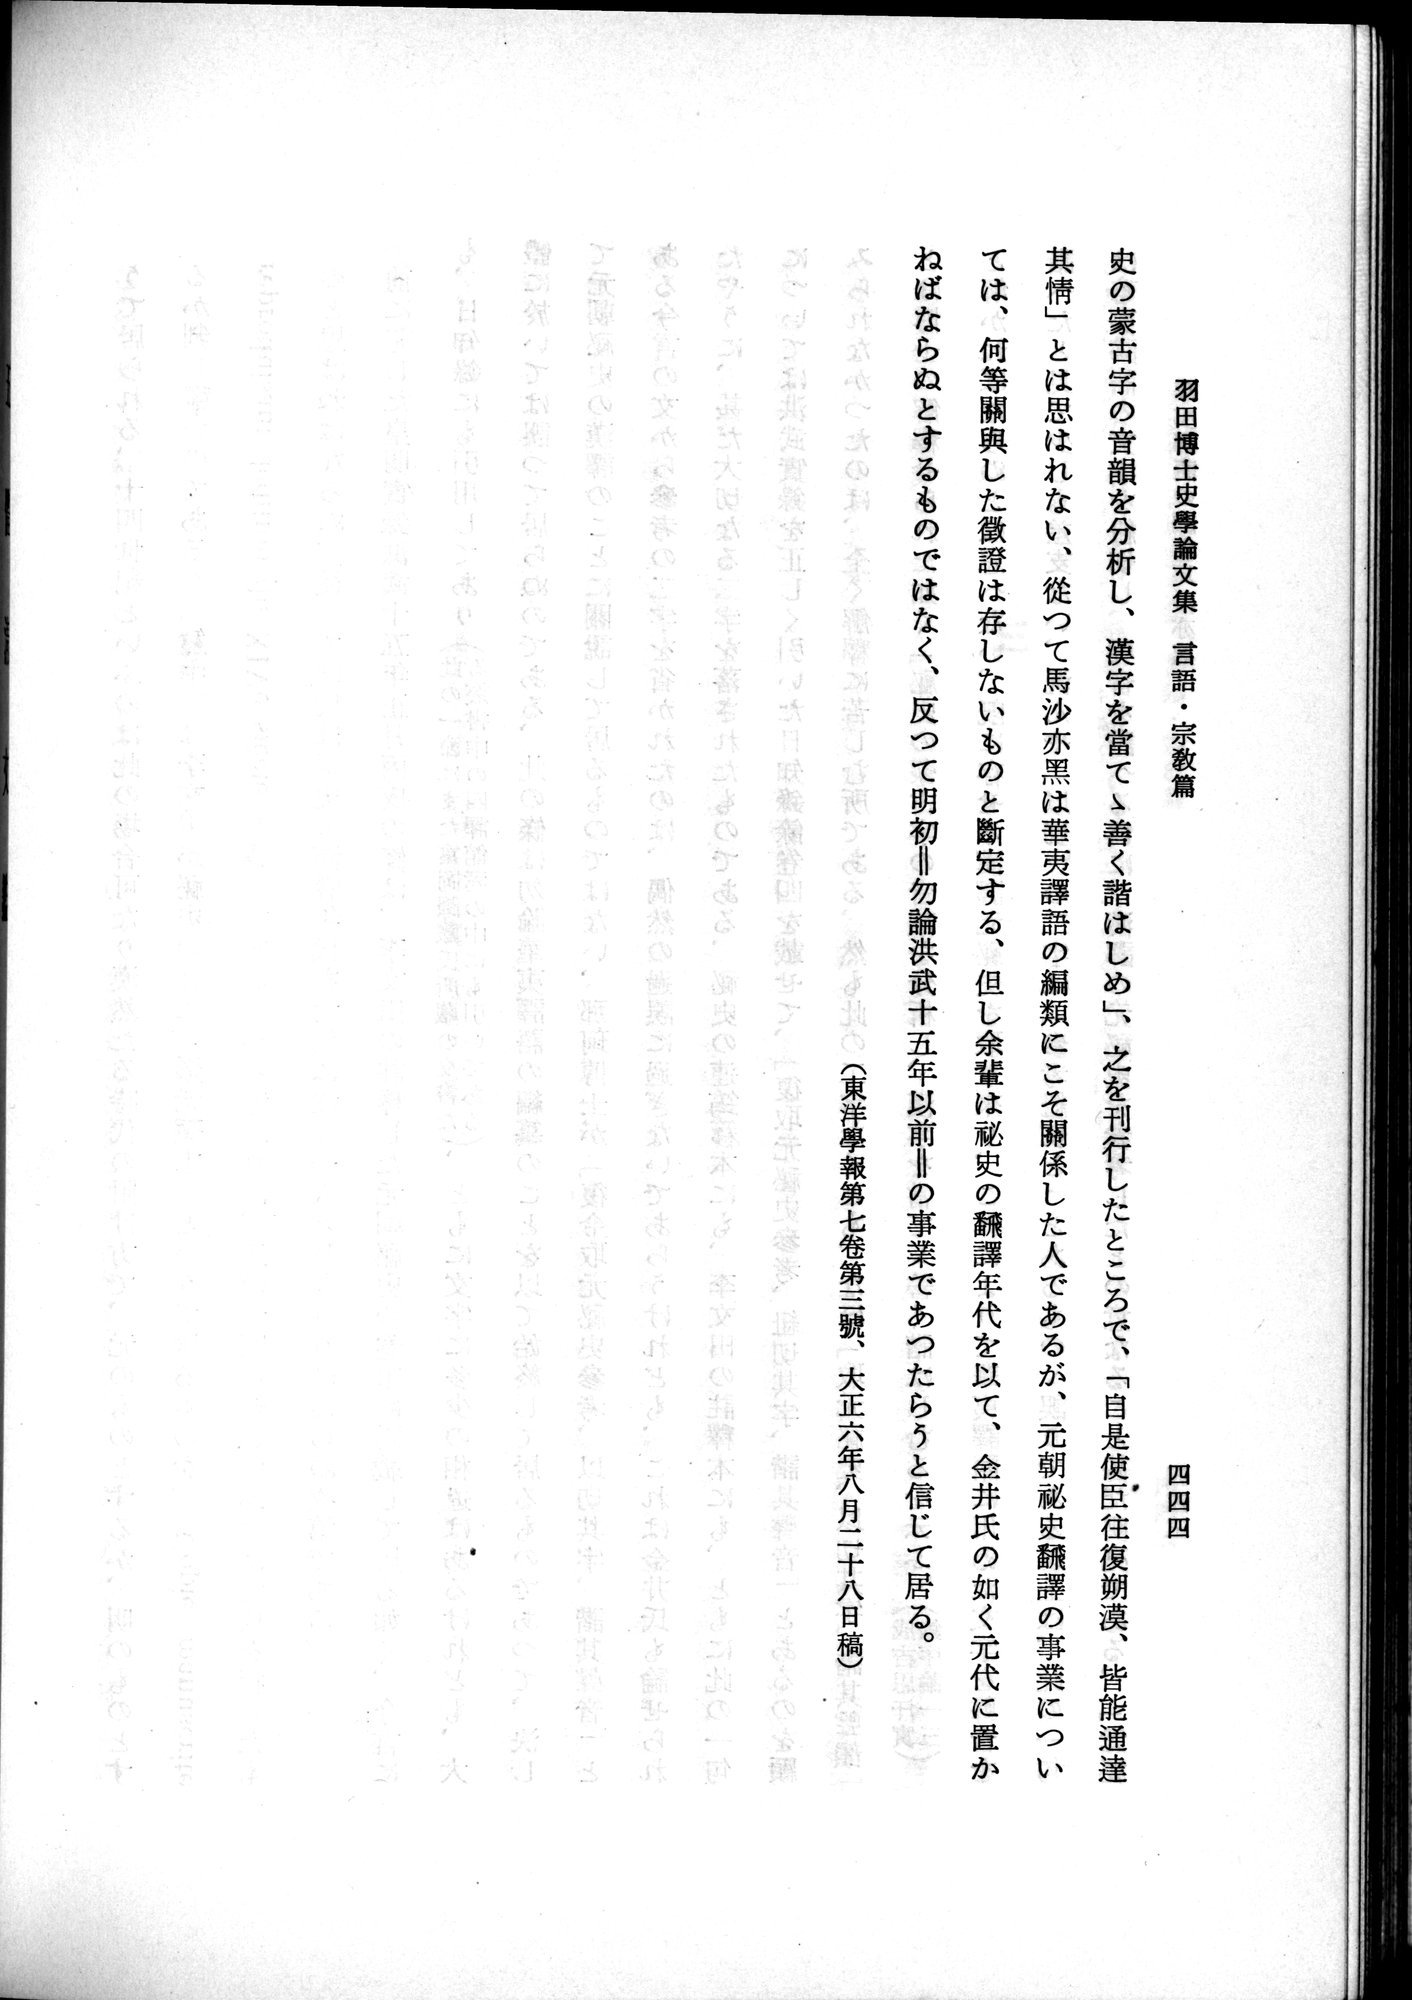 羽田博士史学論文集 : vol.2 / Page 506 (Grayscale High Resolution Image)